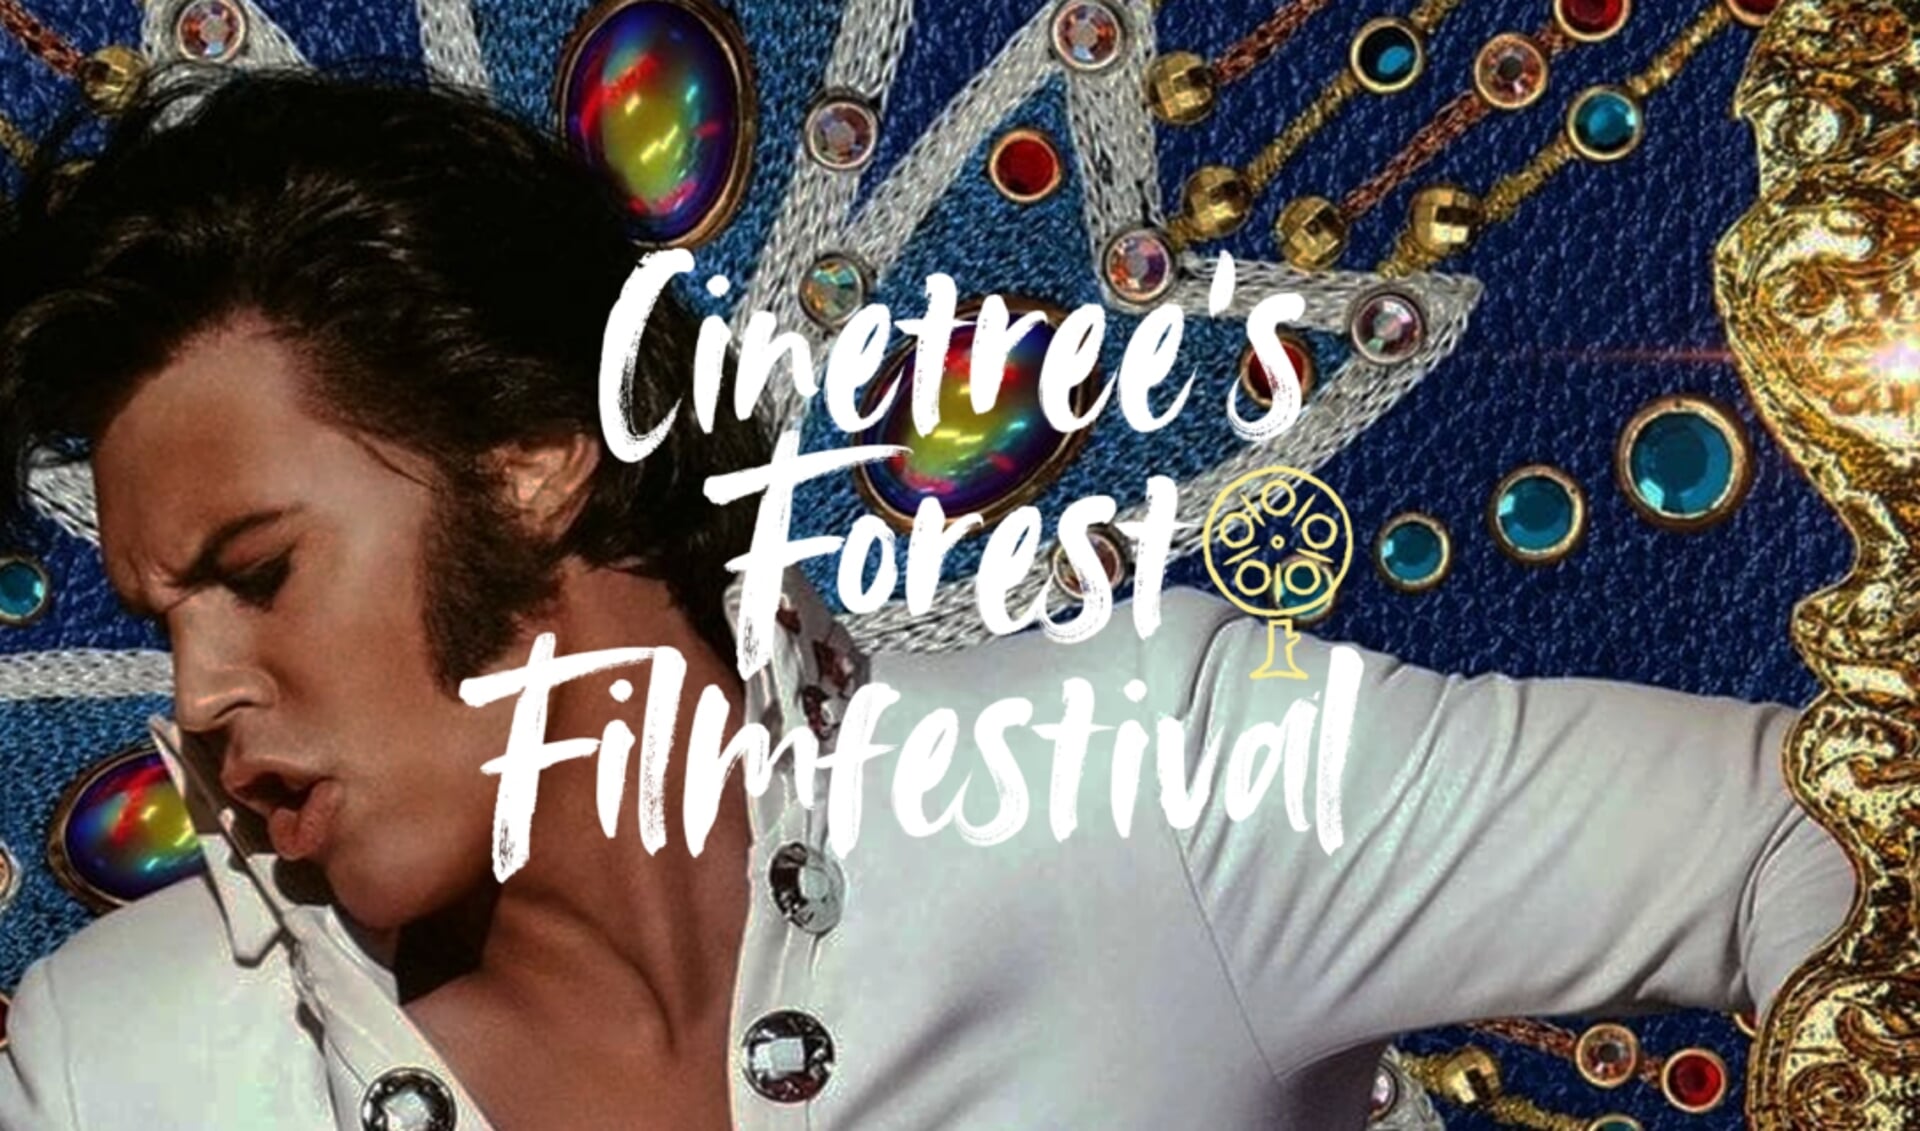 Film Elvis Cinetree forest filmfestival in het Bostheater